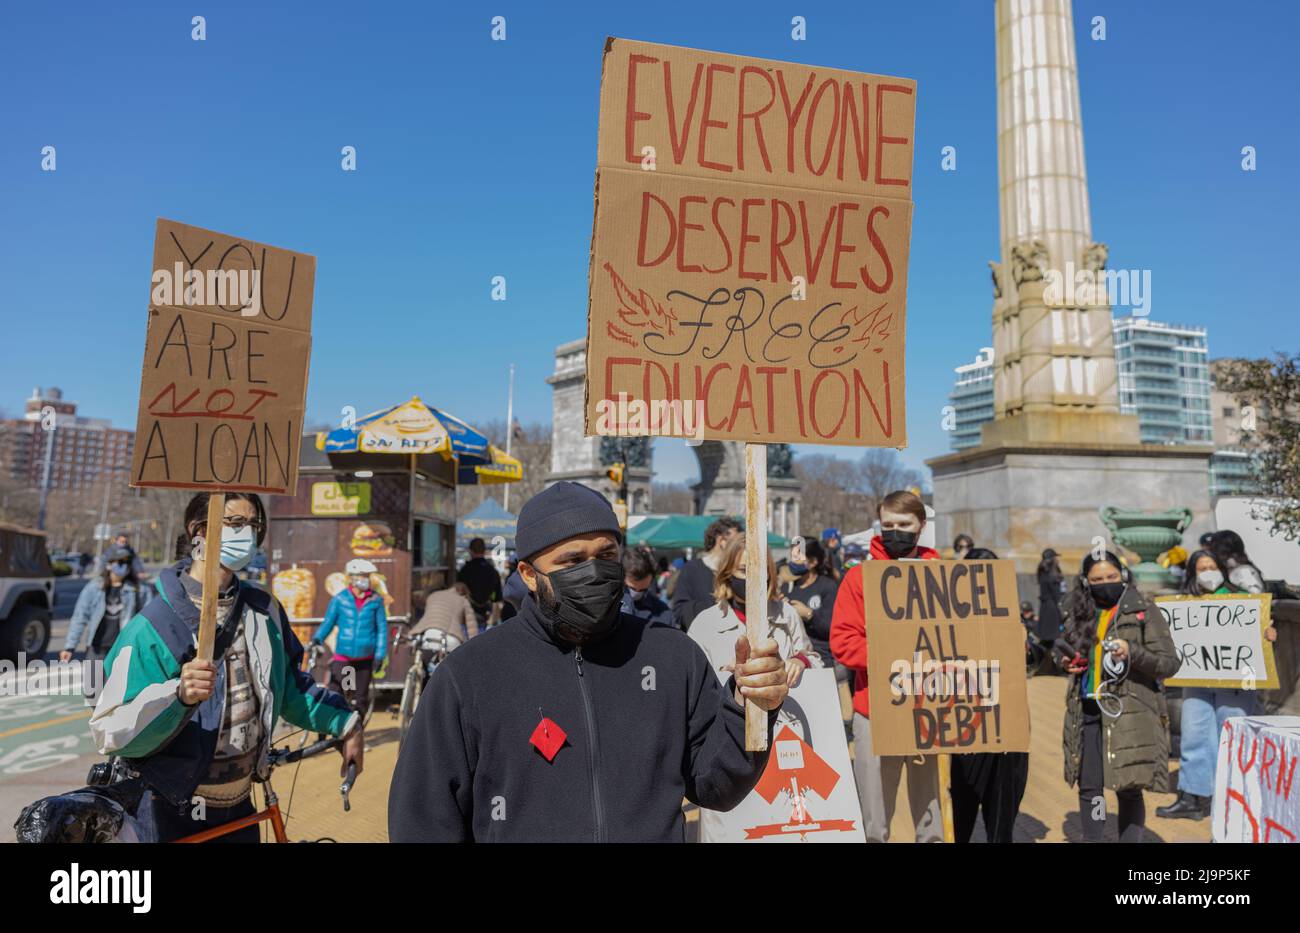 BROOKLYN, NY – 3. April 2021: Demonstranten protestieren in der Nähe des Grand Army Plaza während einer Kundgebung, um die Schulden von Studentendarlehen zu streichen. Stockfoto